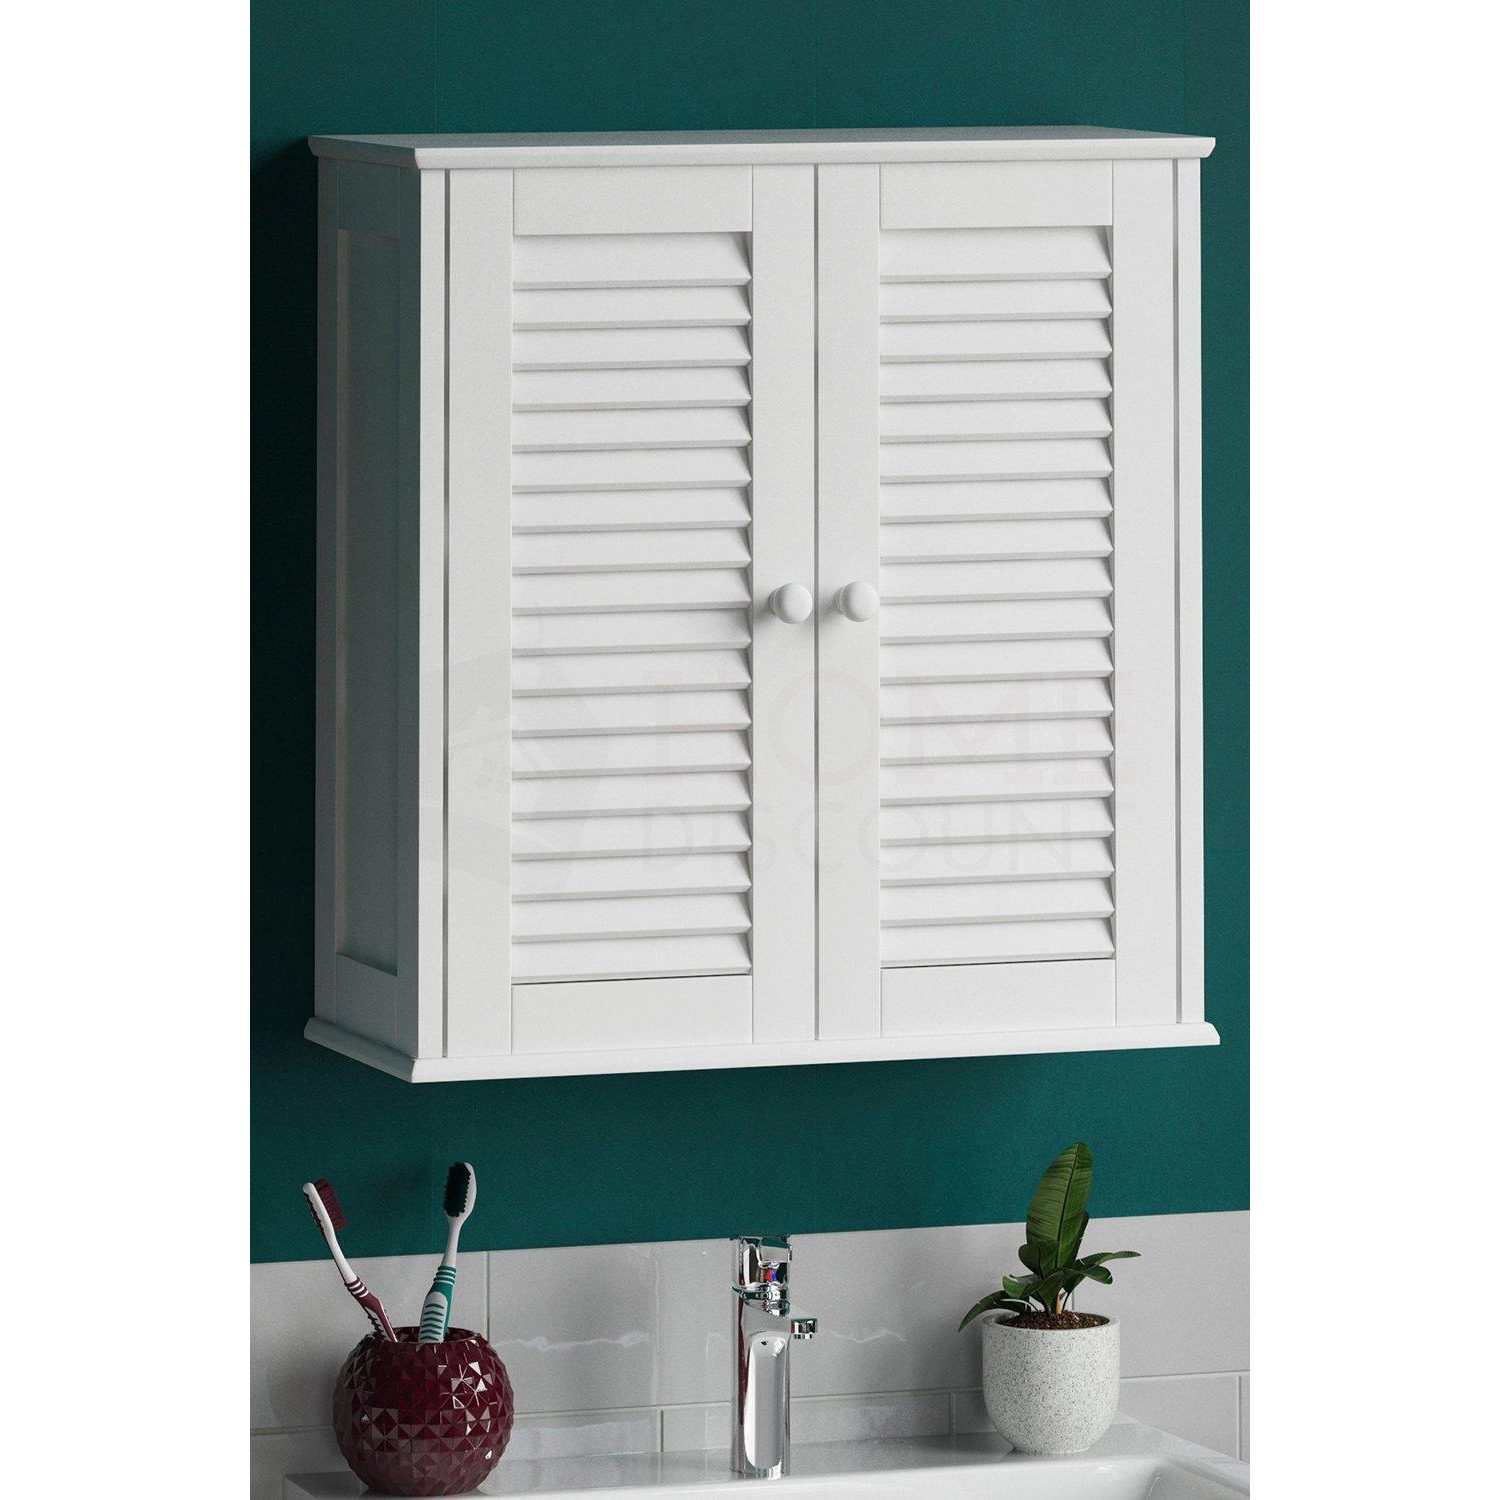 Bath Vida Liano 2 Door Wall Cabinet with Shelves Bathroom Storage - image 1